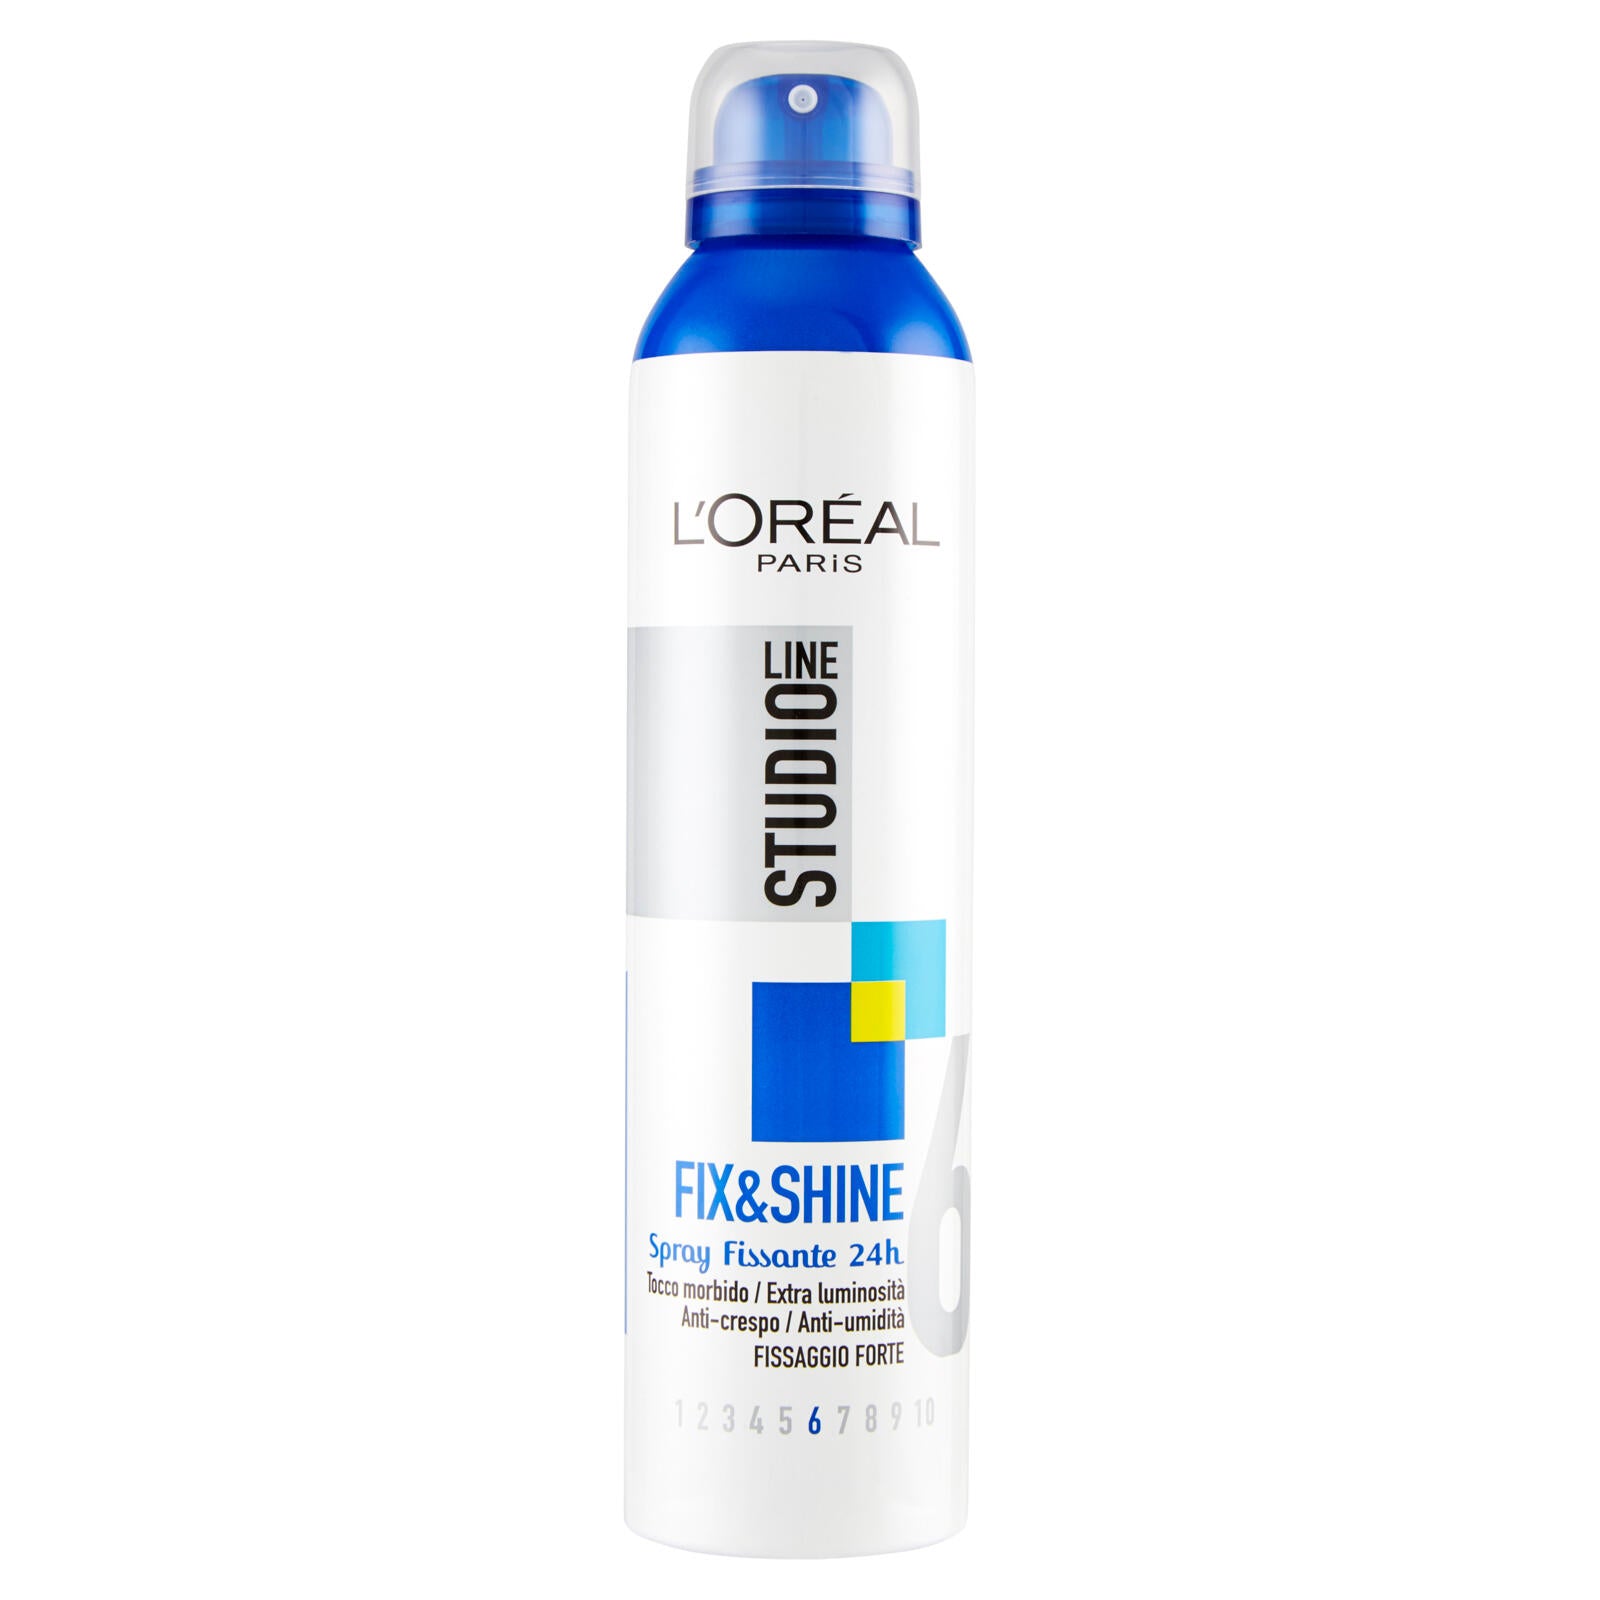 L'Oréal Paris Studio Line Fix&Shine 6 Spray fissante 24h 250 ml